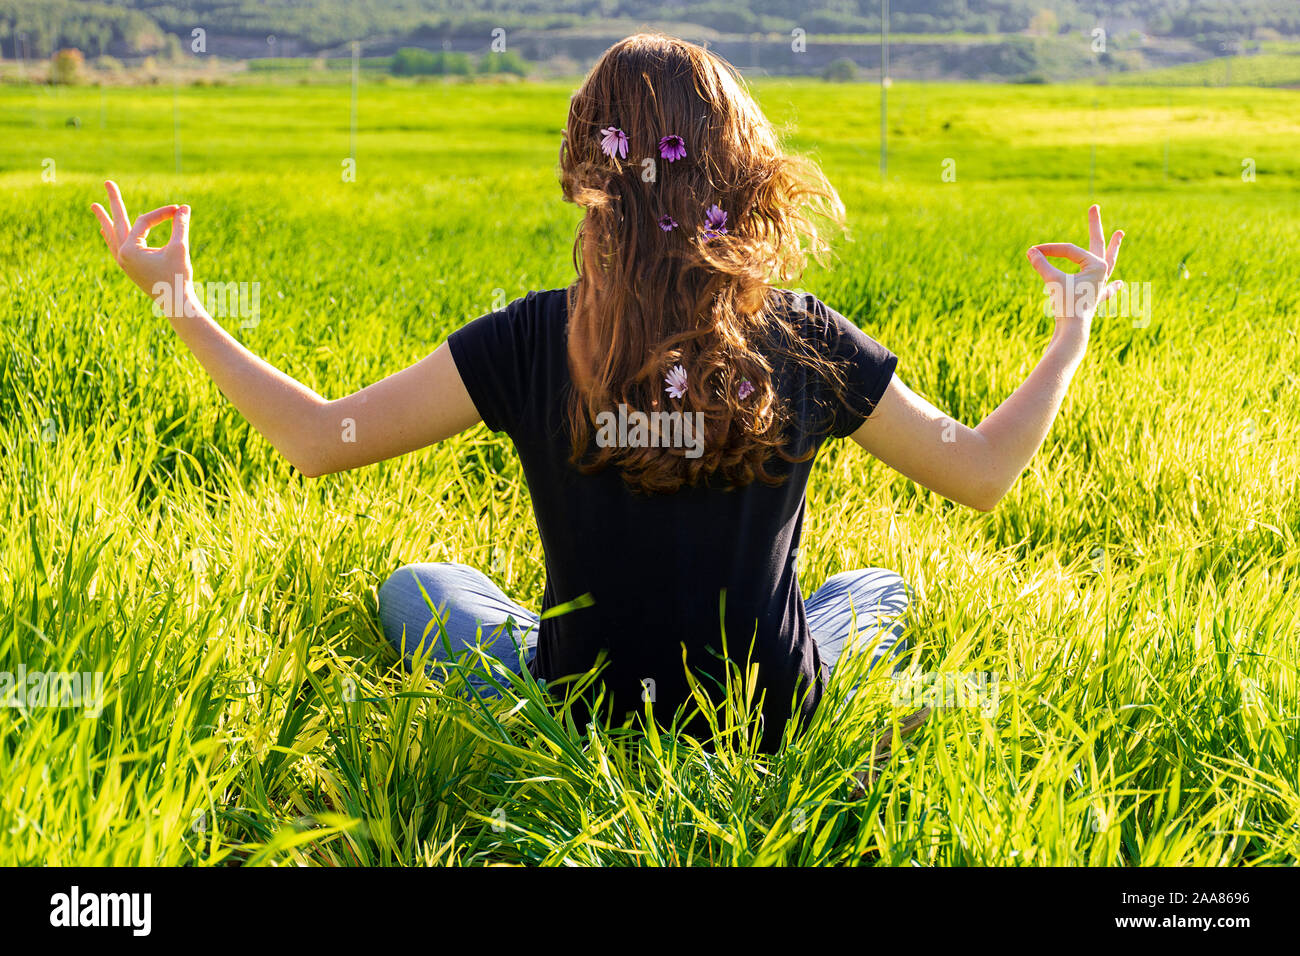 Junge kaukasier Frau rot - mit Sommersprossen blonde, ruht auf der grünen Wiese am Frühling Sonnenuntergang, sitzen in einem Yoga Position. Meditation, Achtsamkeit, entspannen Stockfoto